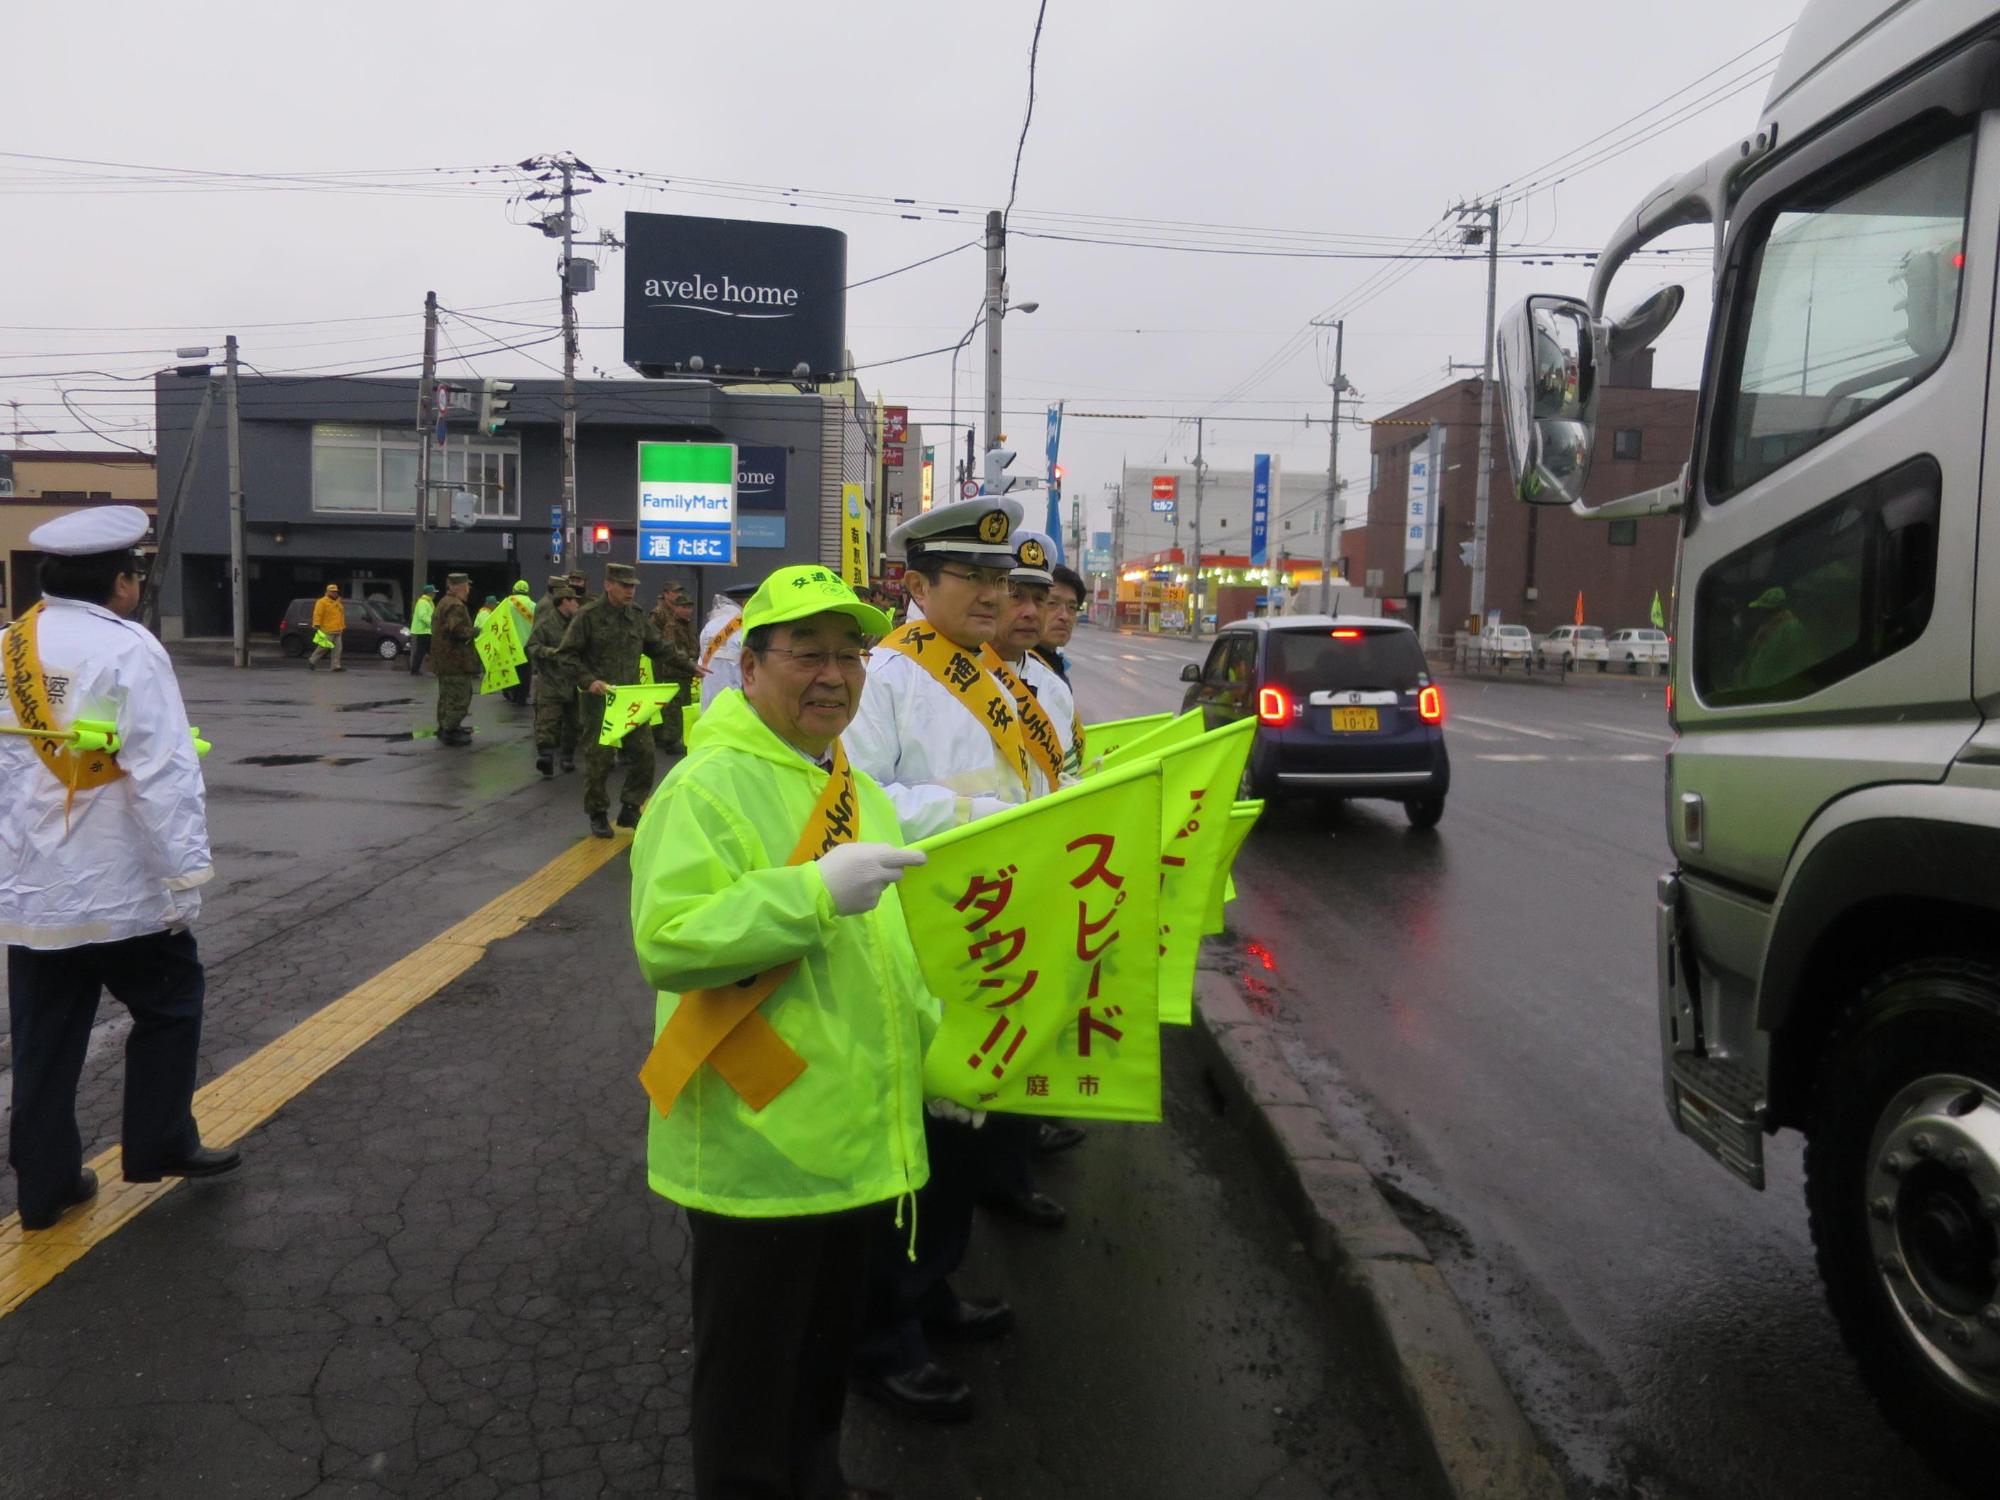 沿道にてスピードダウンの旗を手に通行する車に呼び掛けて原田市長の写真